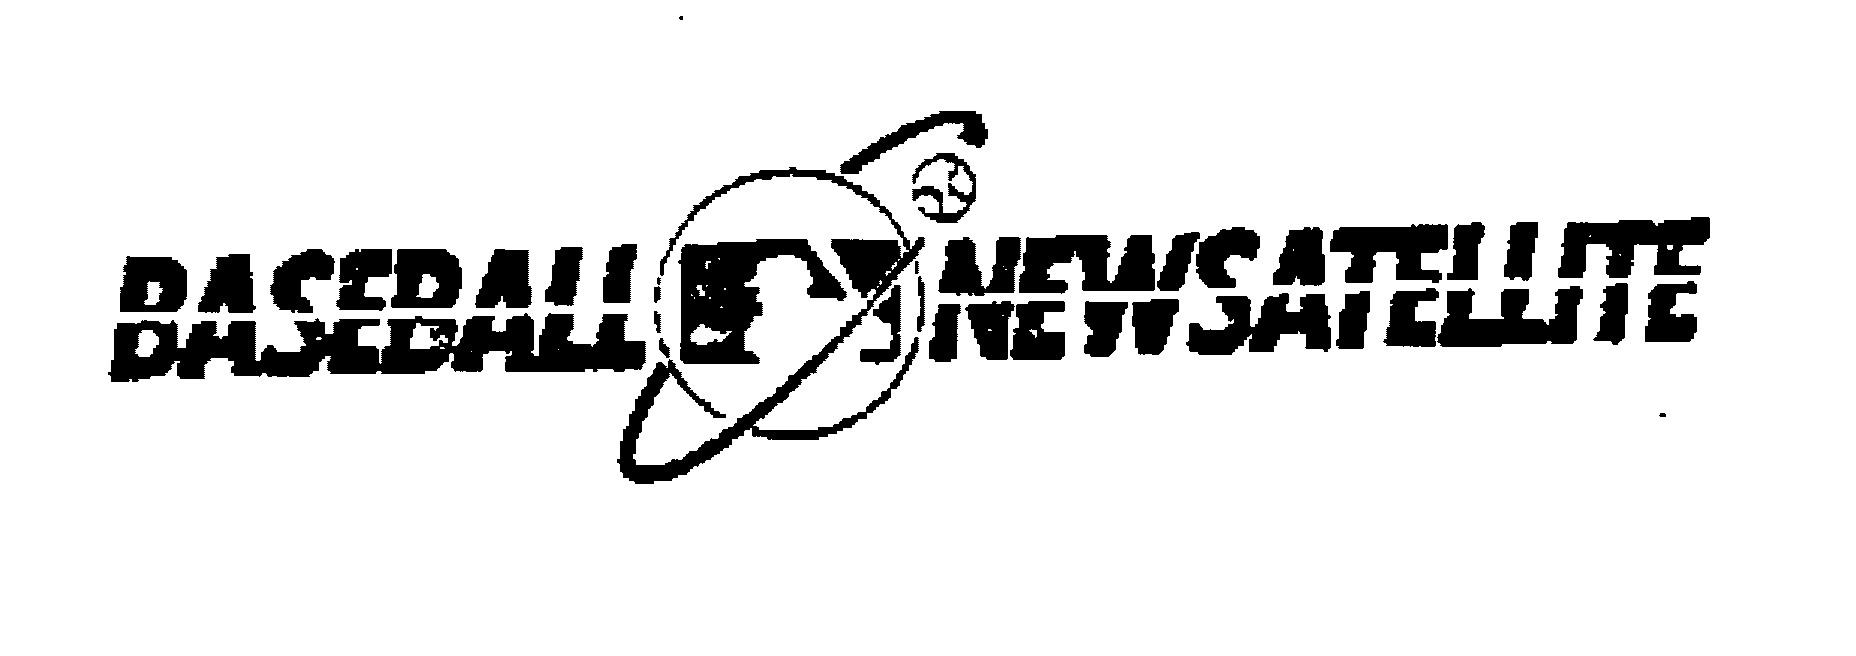 Trademark Logo BASEBALL NEWSATELLITE